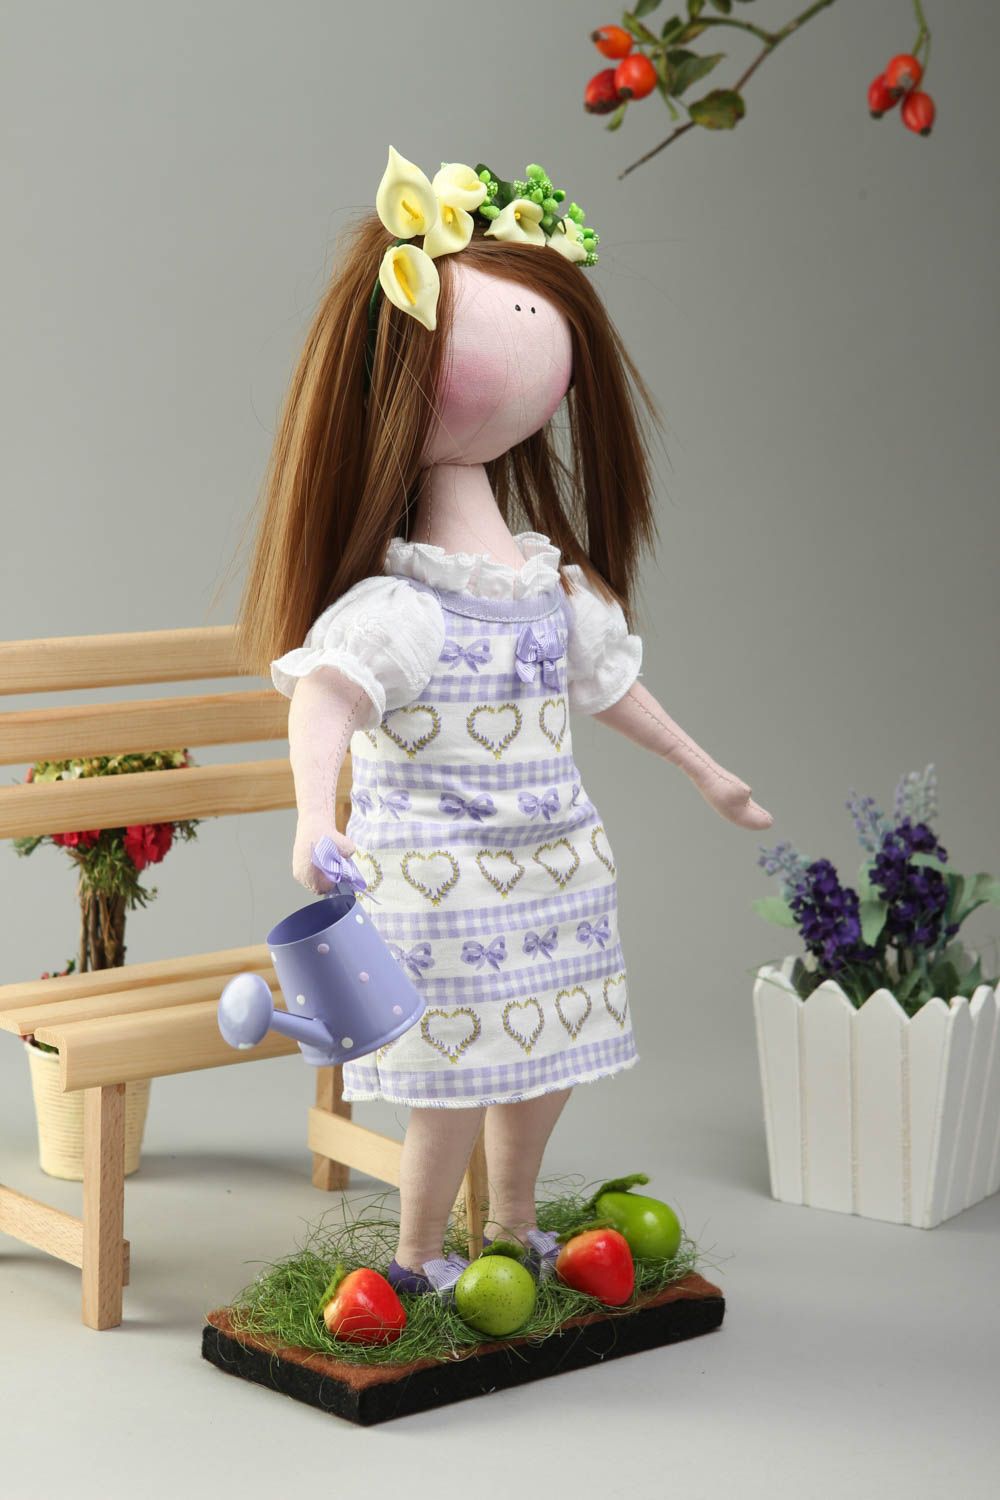 Кукла ручной работы кукла из ткани с веночком мягкая кукла на подставке фото 1